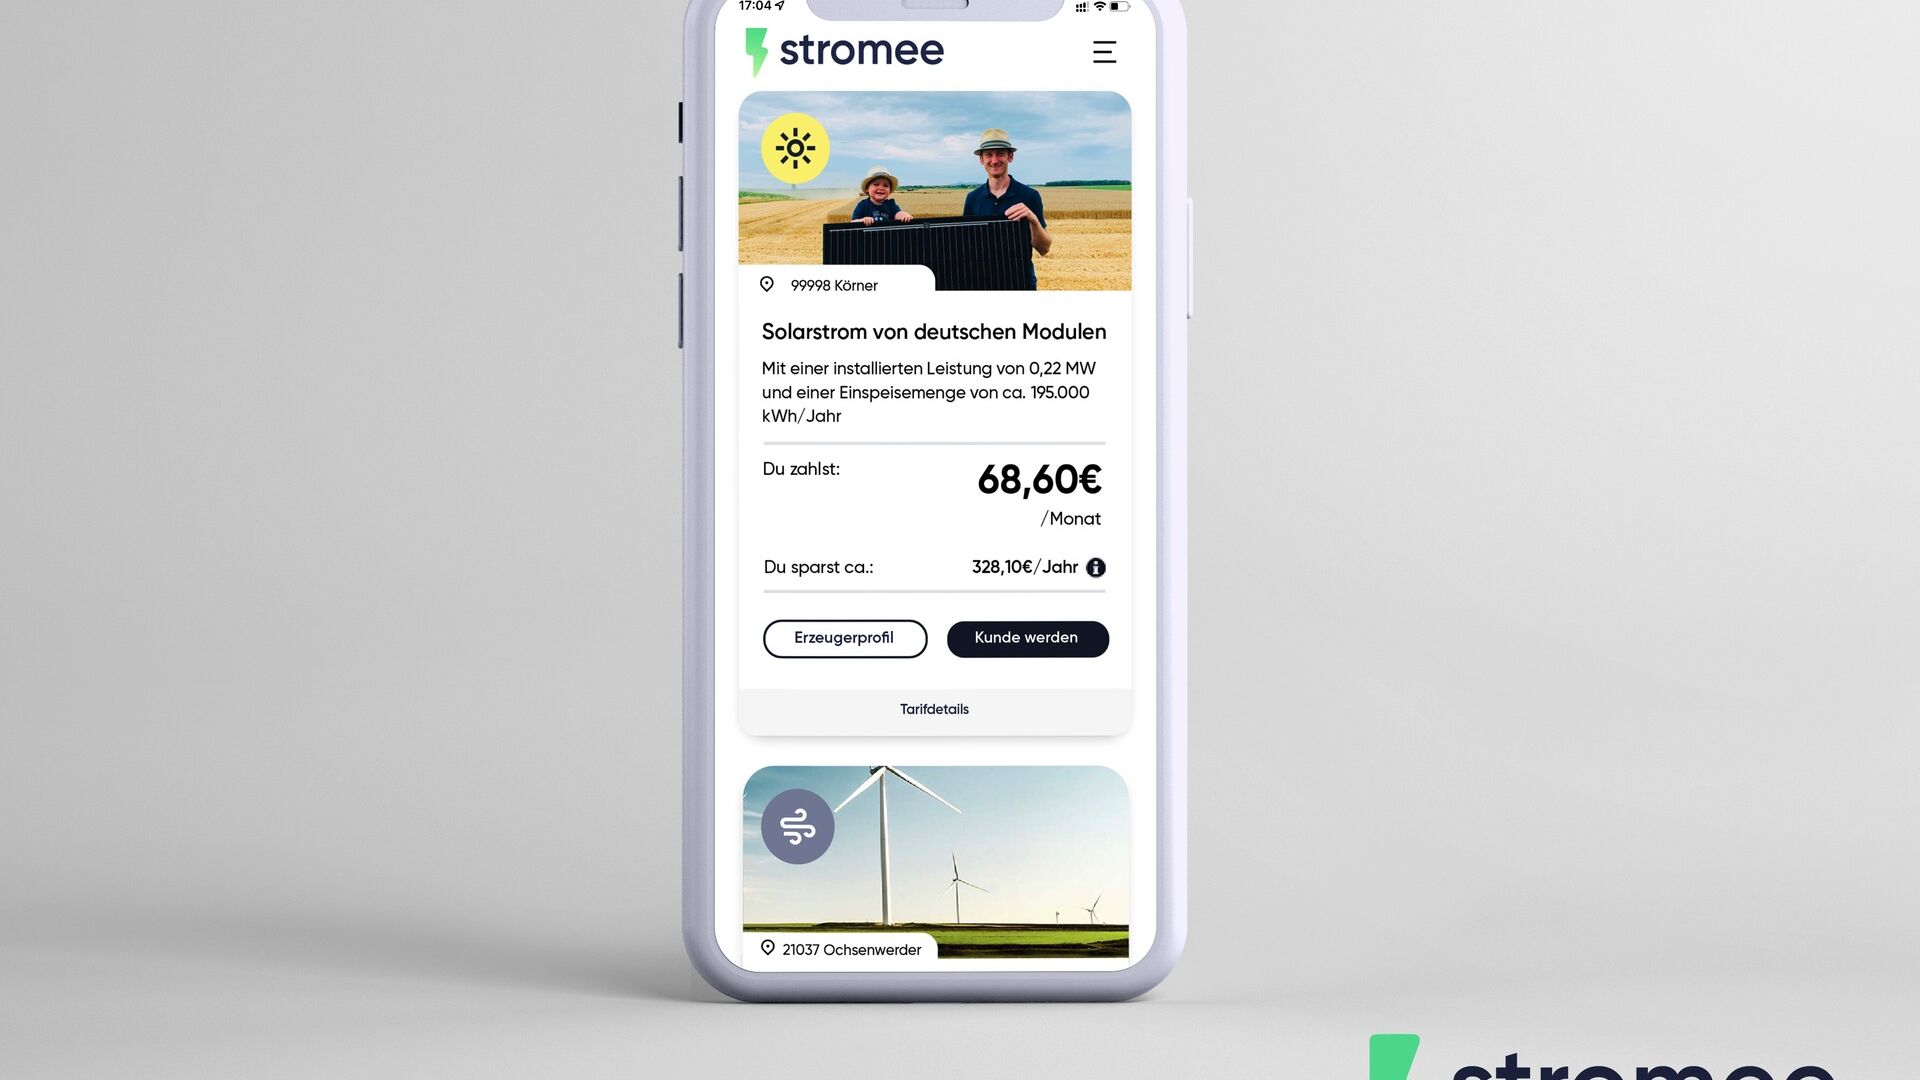 Deutschland: Die Stromee-Firmen-App auf dem Smartphone